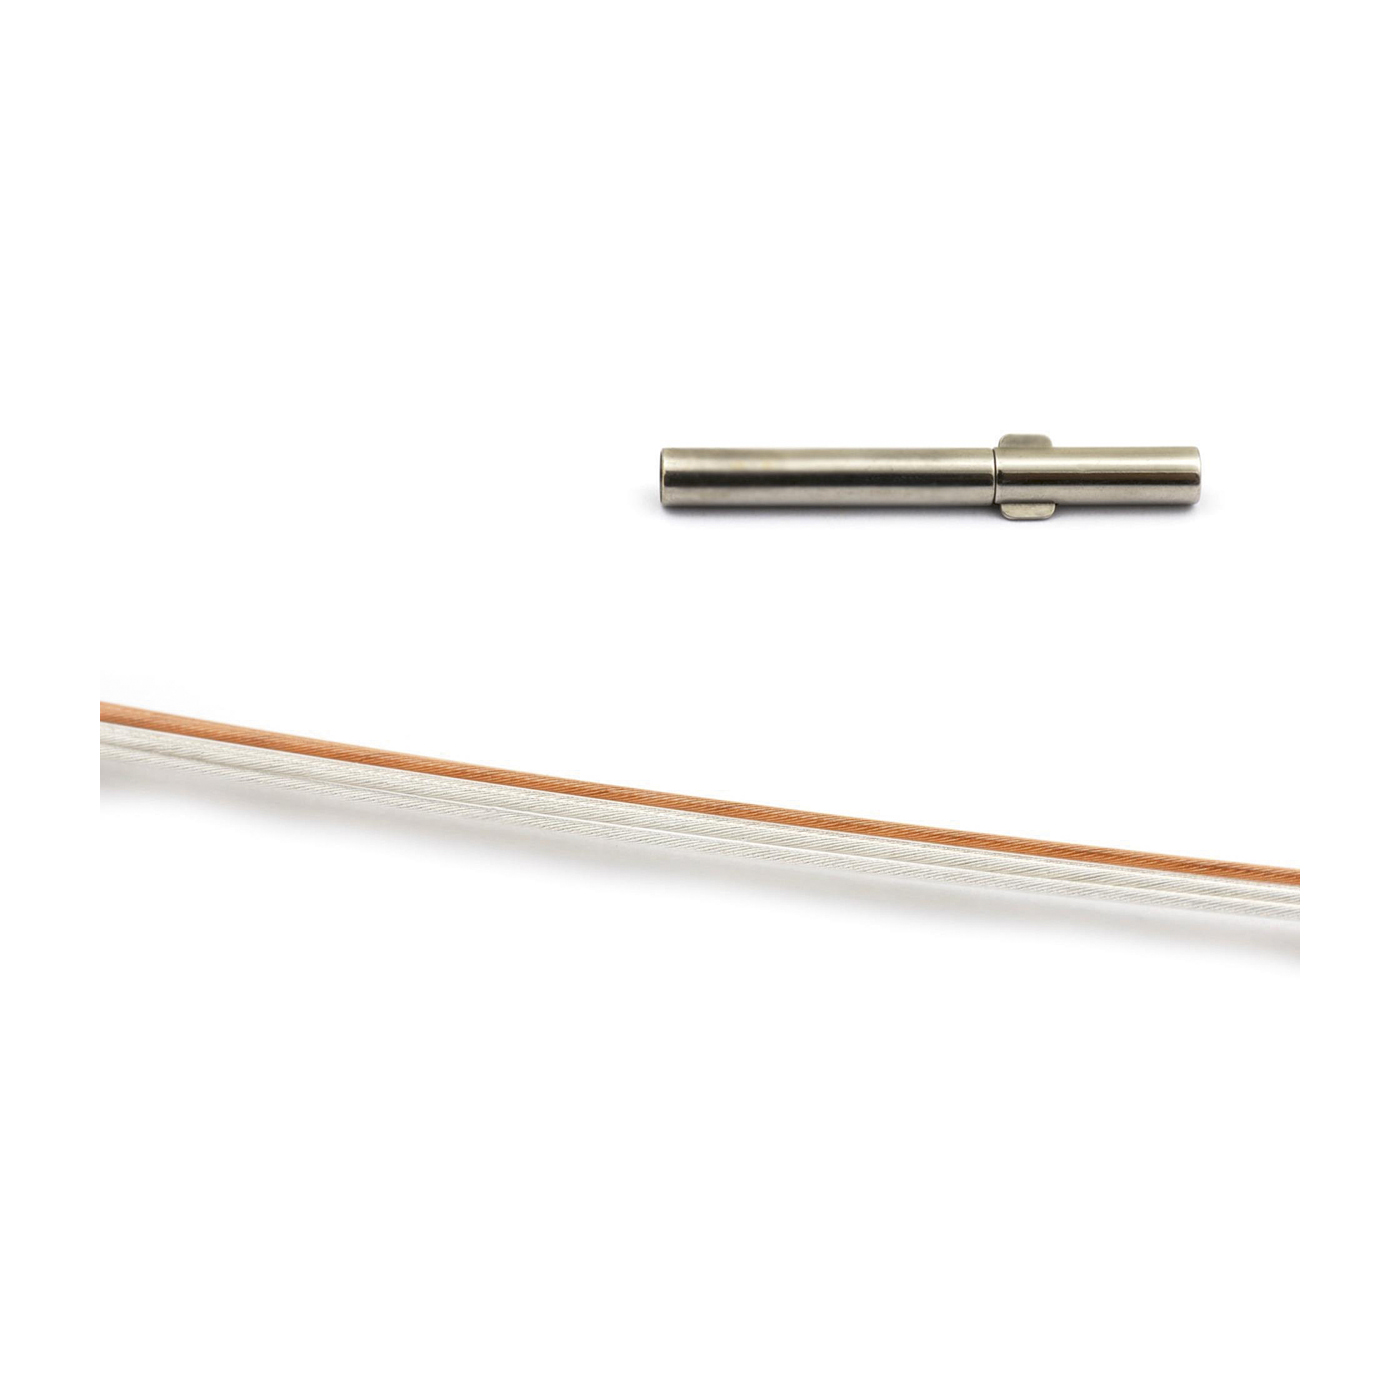 Seilcollier "Plus Cable", ES bicolor, Si/rosé, 5-reihig,42cm - 1 Stück